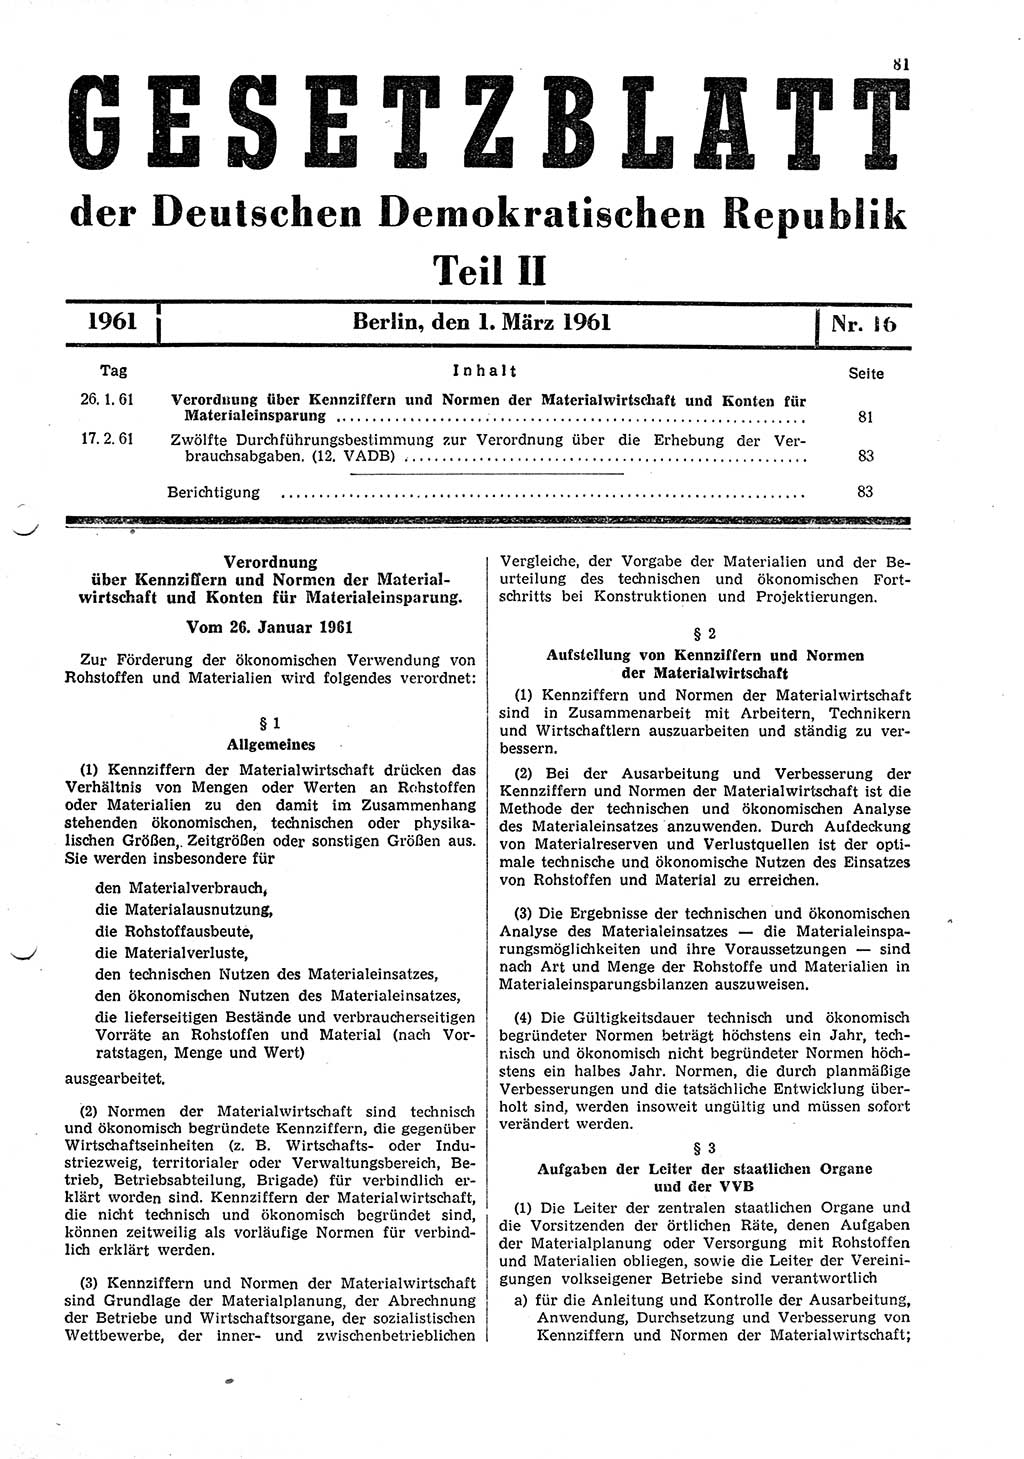 Gesetzblatt (GBl.) der Deutschen Demokratischen Republik (DDR) Teil ⅠⅠ 1961, Seite 81 (GBl. DDR ⅠⅠ 1961, S. 81)